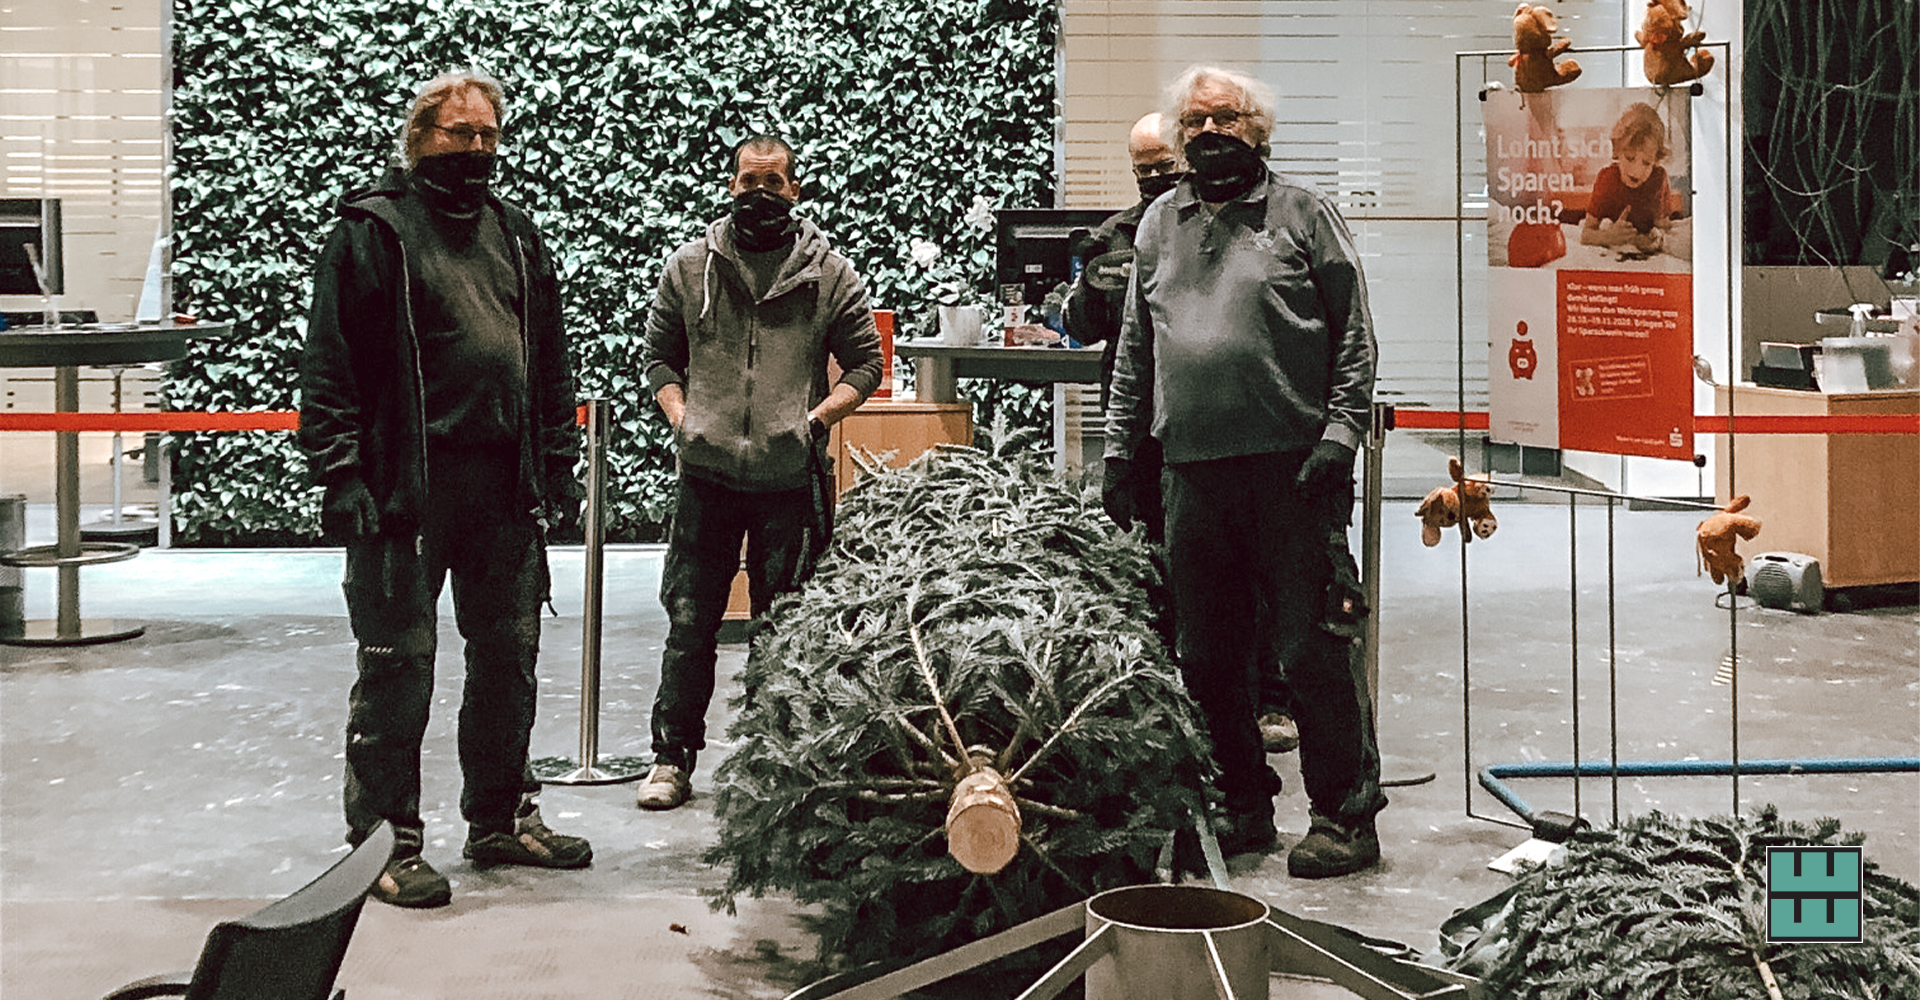 Auch in diesem Jahr wurde unsere Weihnachtszeit mit dem Aufstellen und Schmücken der Weihnachtsbäume für die Sparkasse Hildesheim-Goslar-Peine eingeläutet.